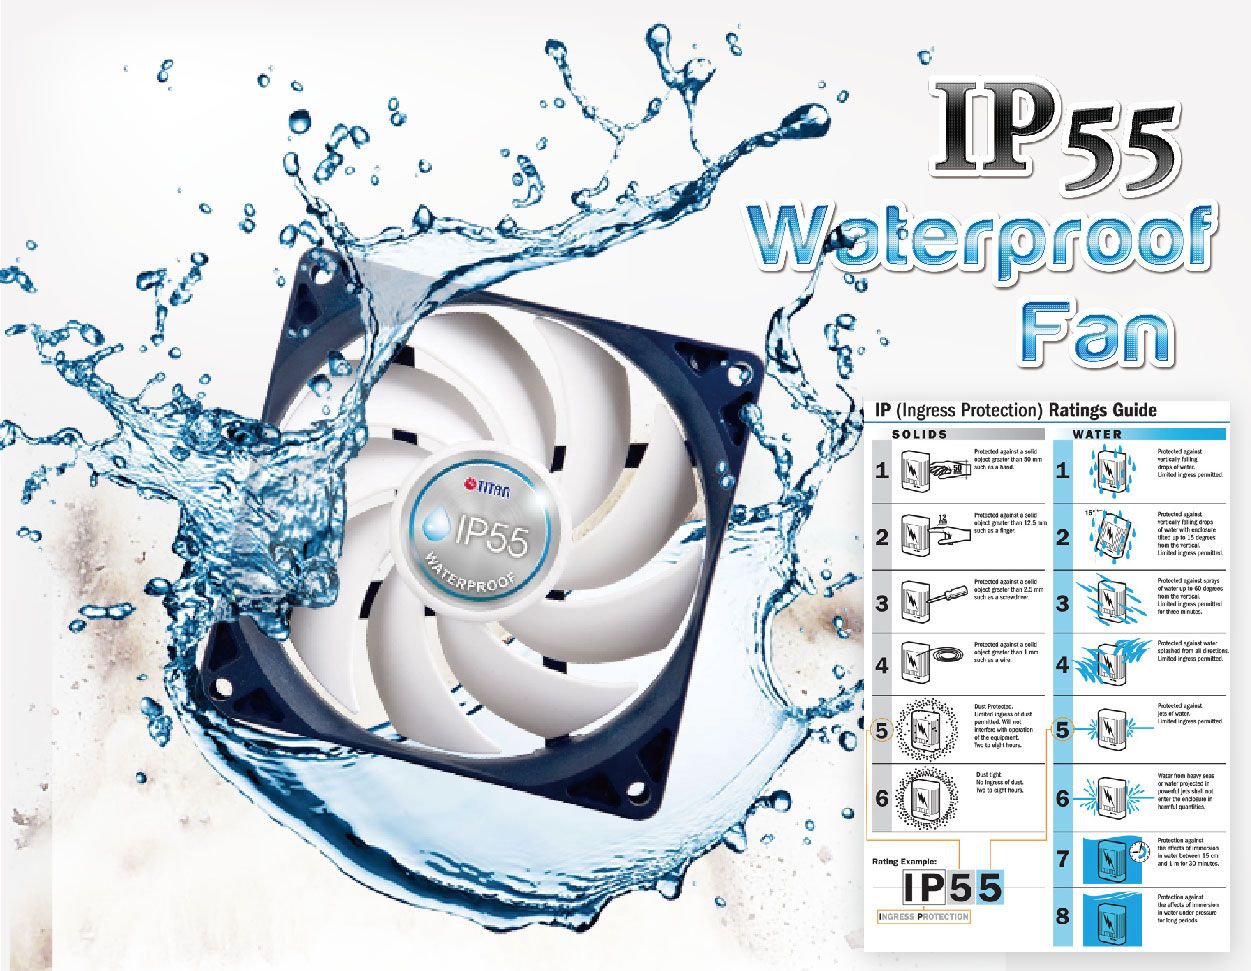 مروحة مقاومة للماء بتصنيف IP55 هي الميزة الحاسمة لمروحة السيارة الترفيهية